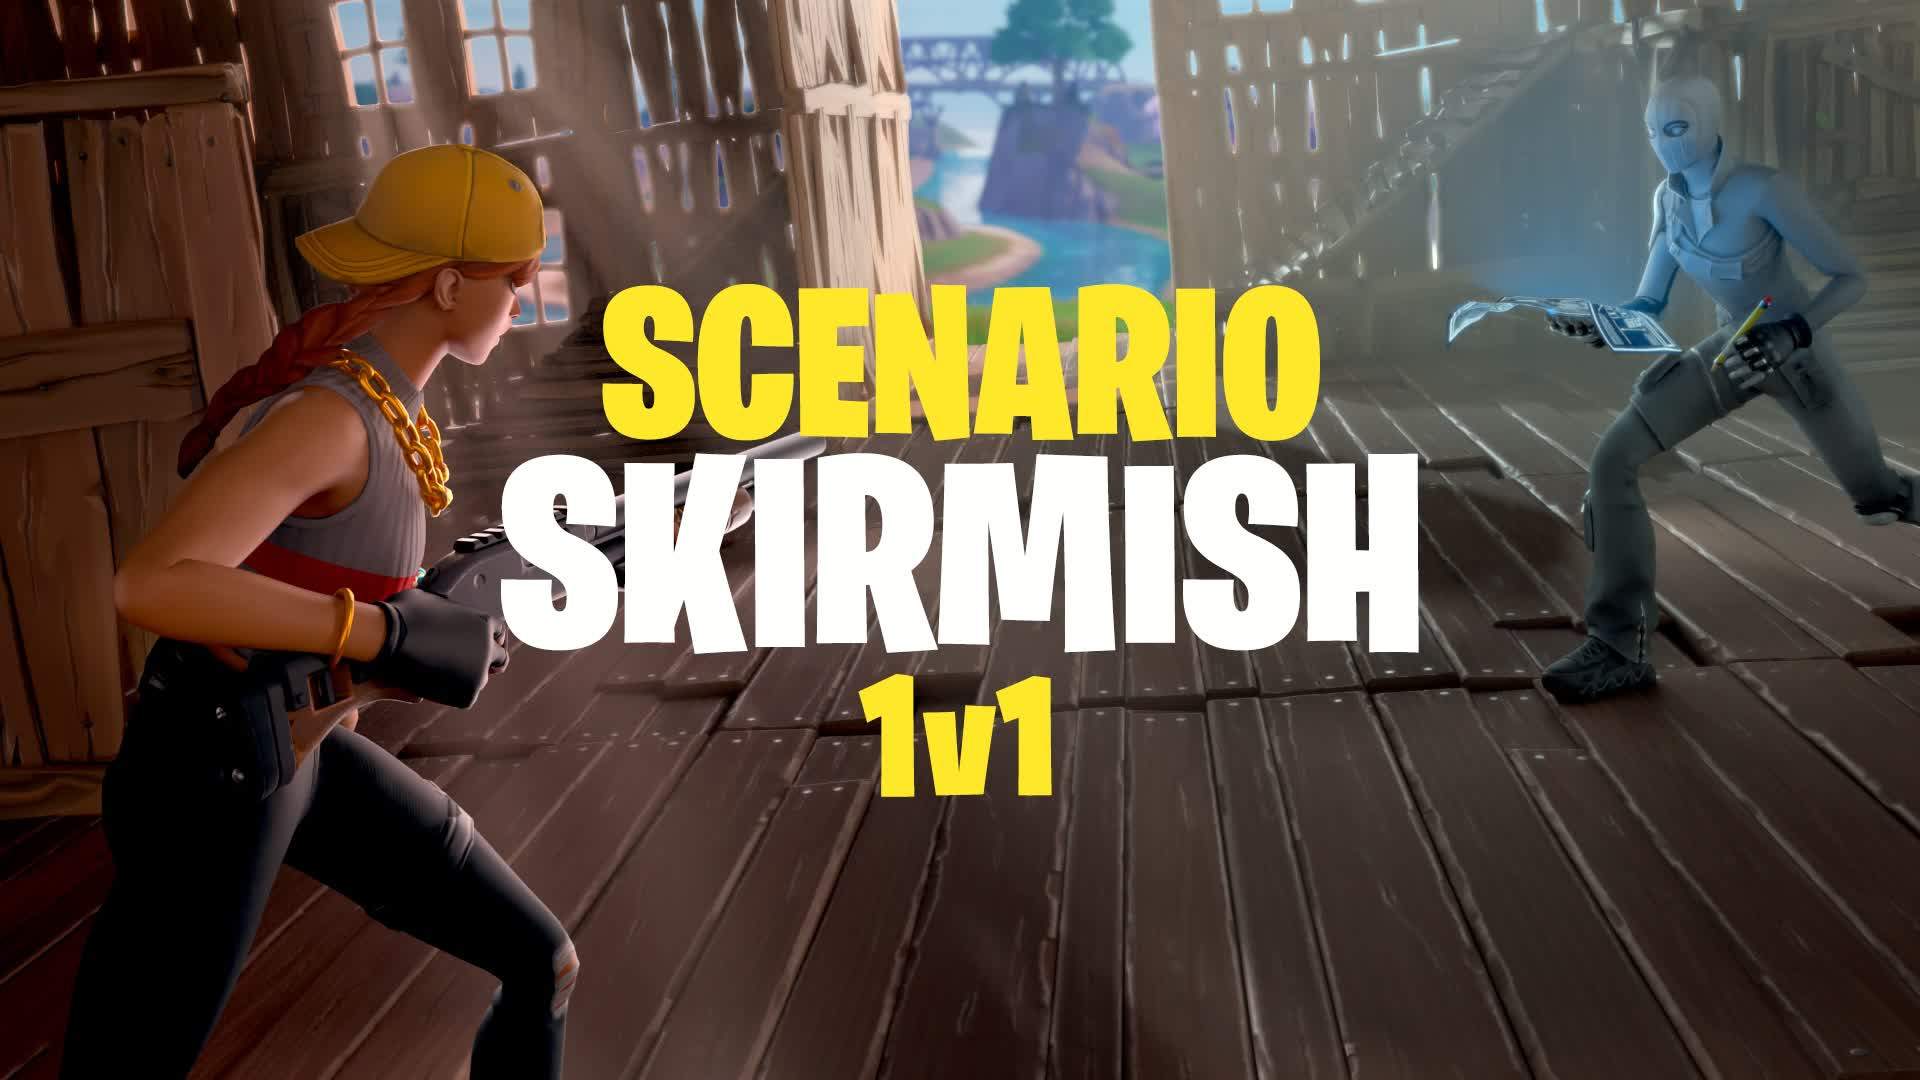 Scenario Skirmish - 1v1